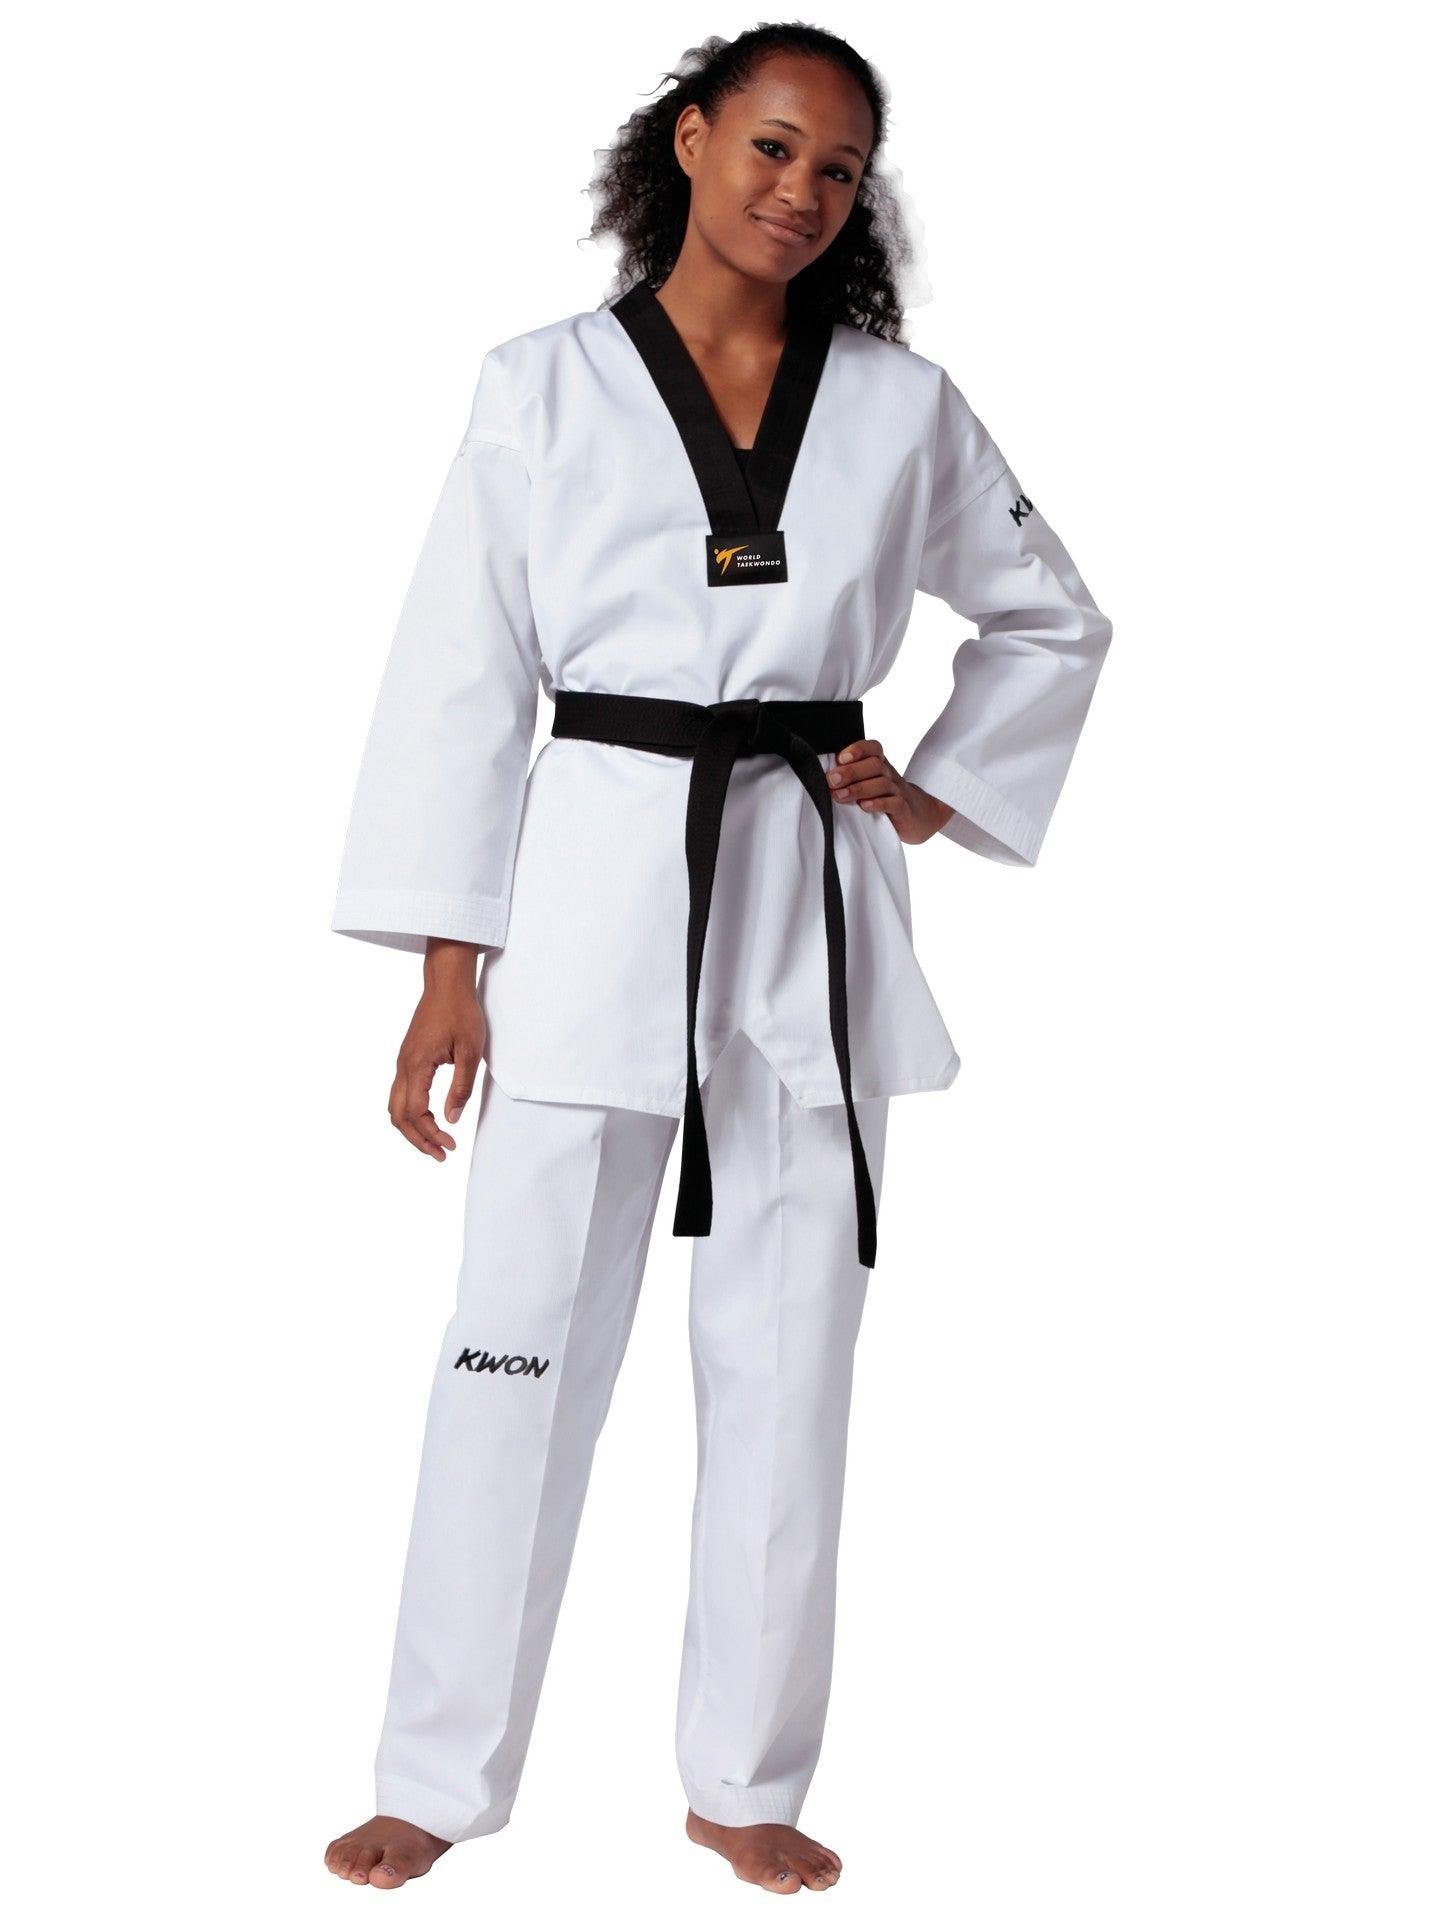 Dobok Taekwondo Victory - Kwon - Boutique des Arts Martiaux et Sports de Combat